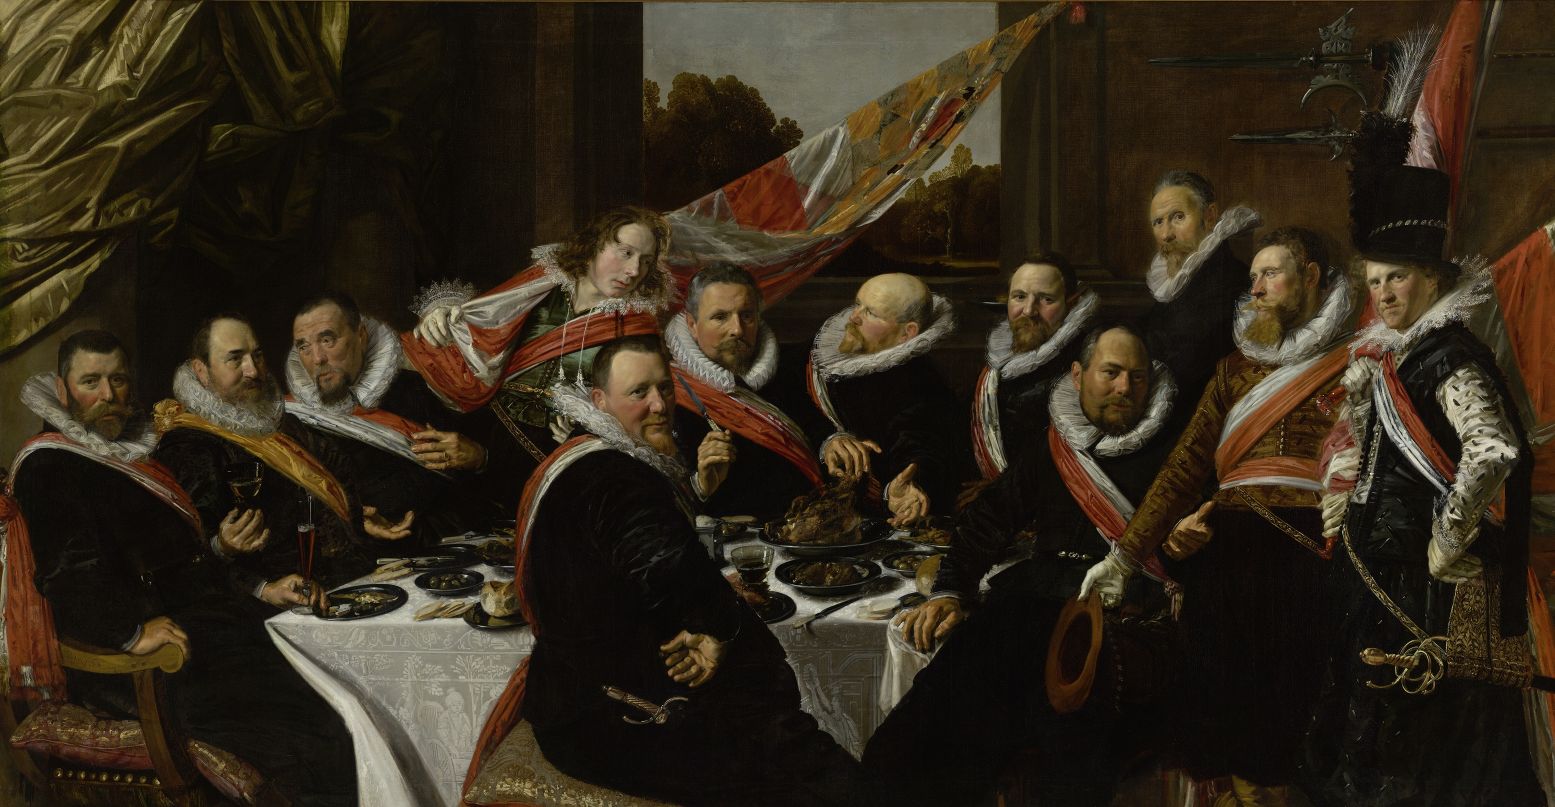 Voor het eerst buiten Haarlem te zien: Feestmaal van de officieren van de St. Jorisschutterij, Frans Hals 1616. Foto: Frans Hals Museum